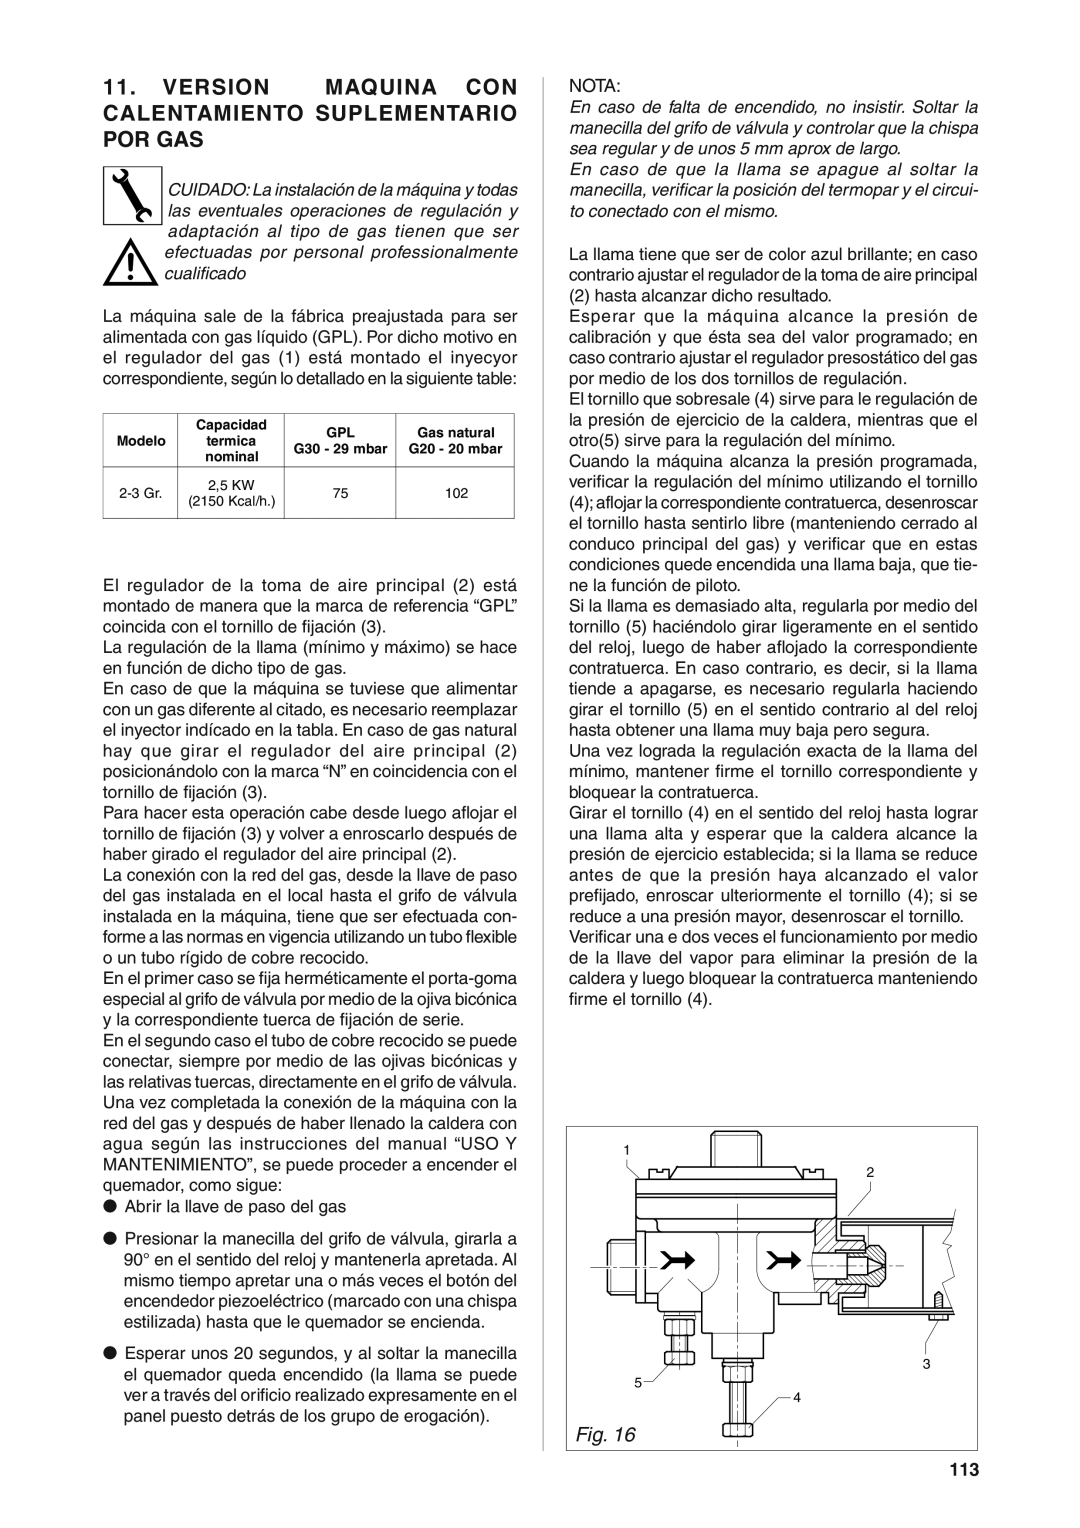 Rancilio S20 manual Version Maquina Con Calentamiento Suplementario Por Gas 